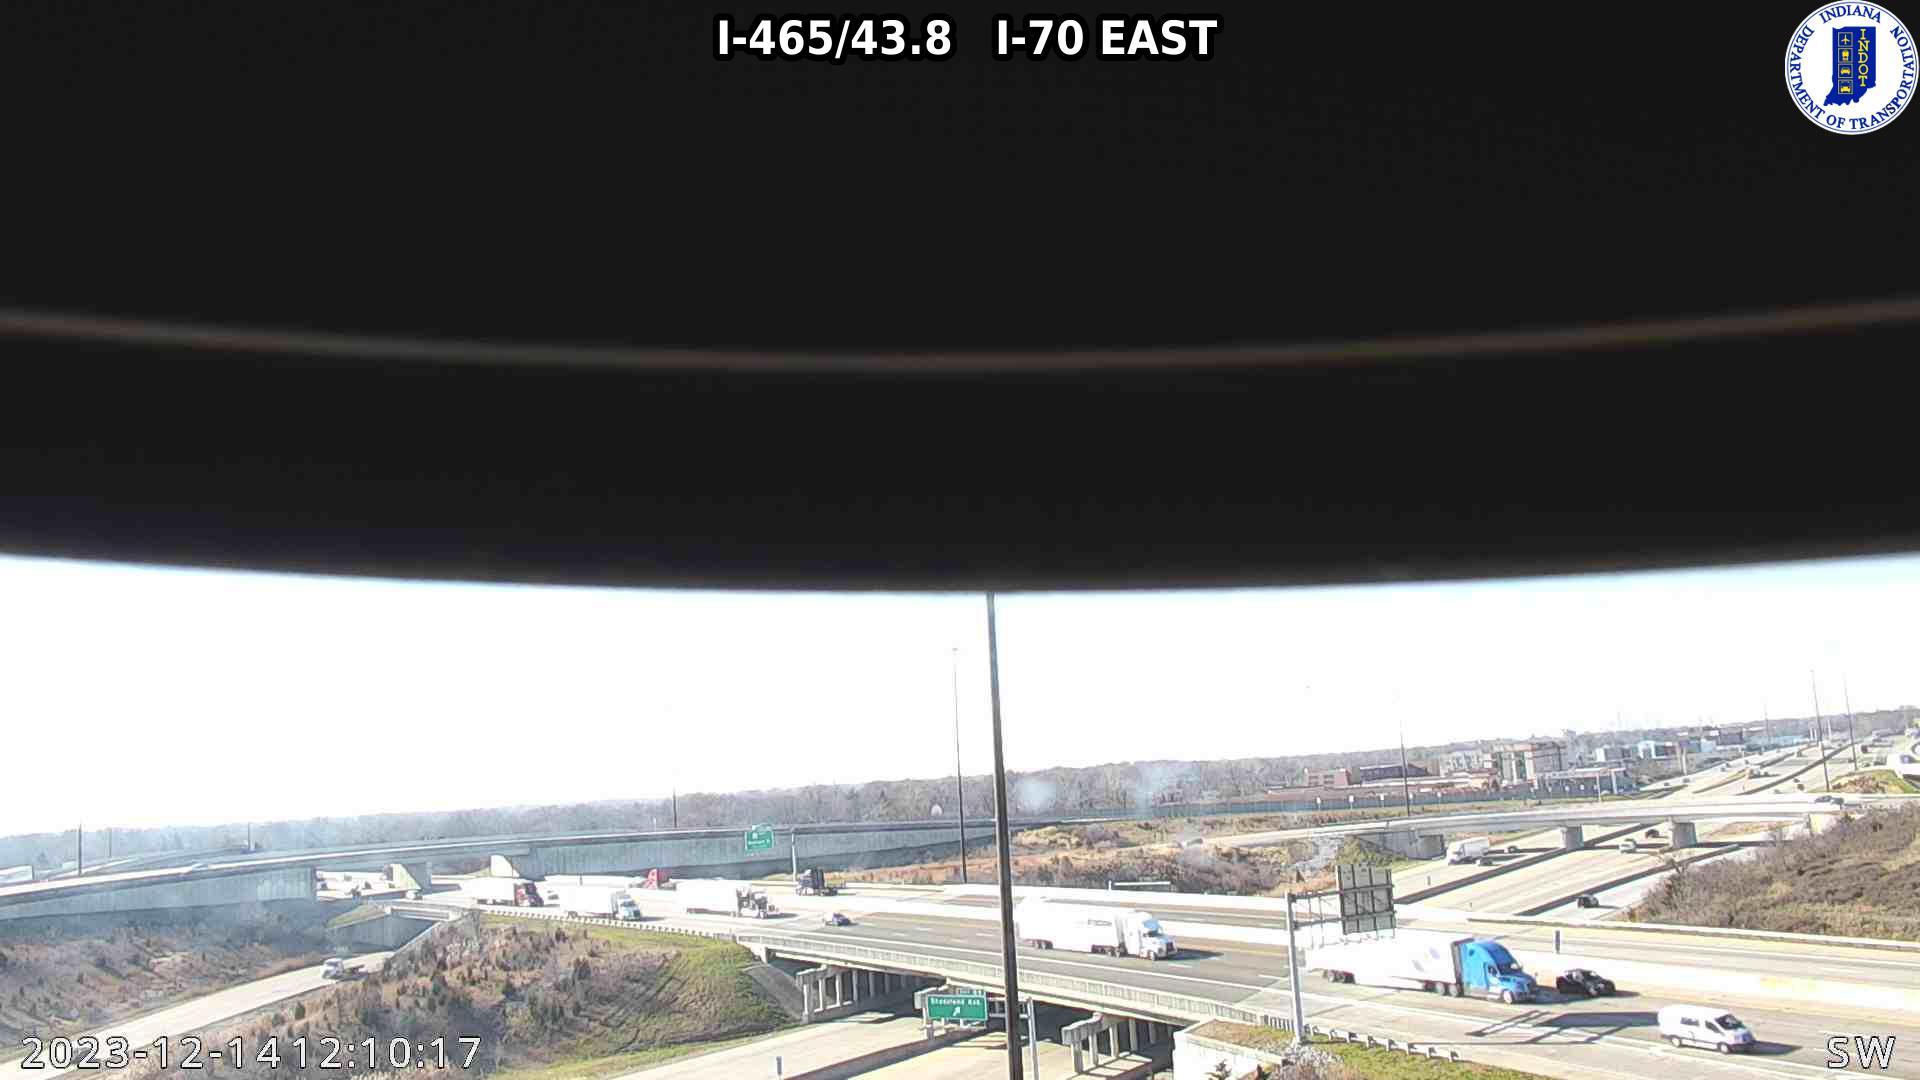 Indianapolis › East: I-465: I-465/43.8 I-70 EAST Traffic Camera